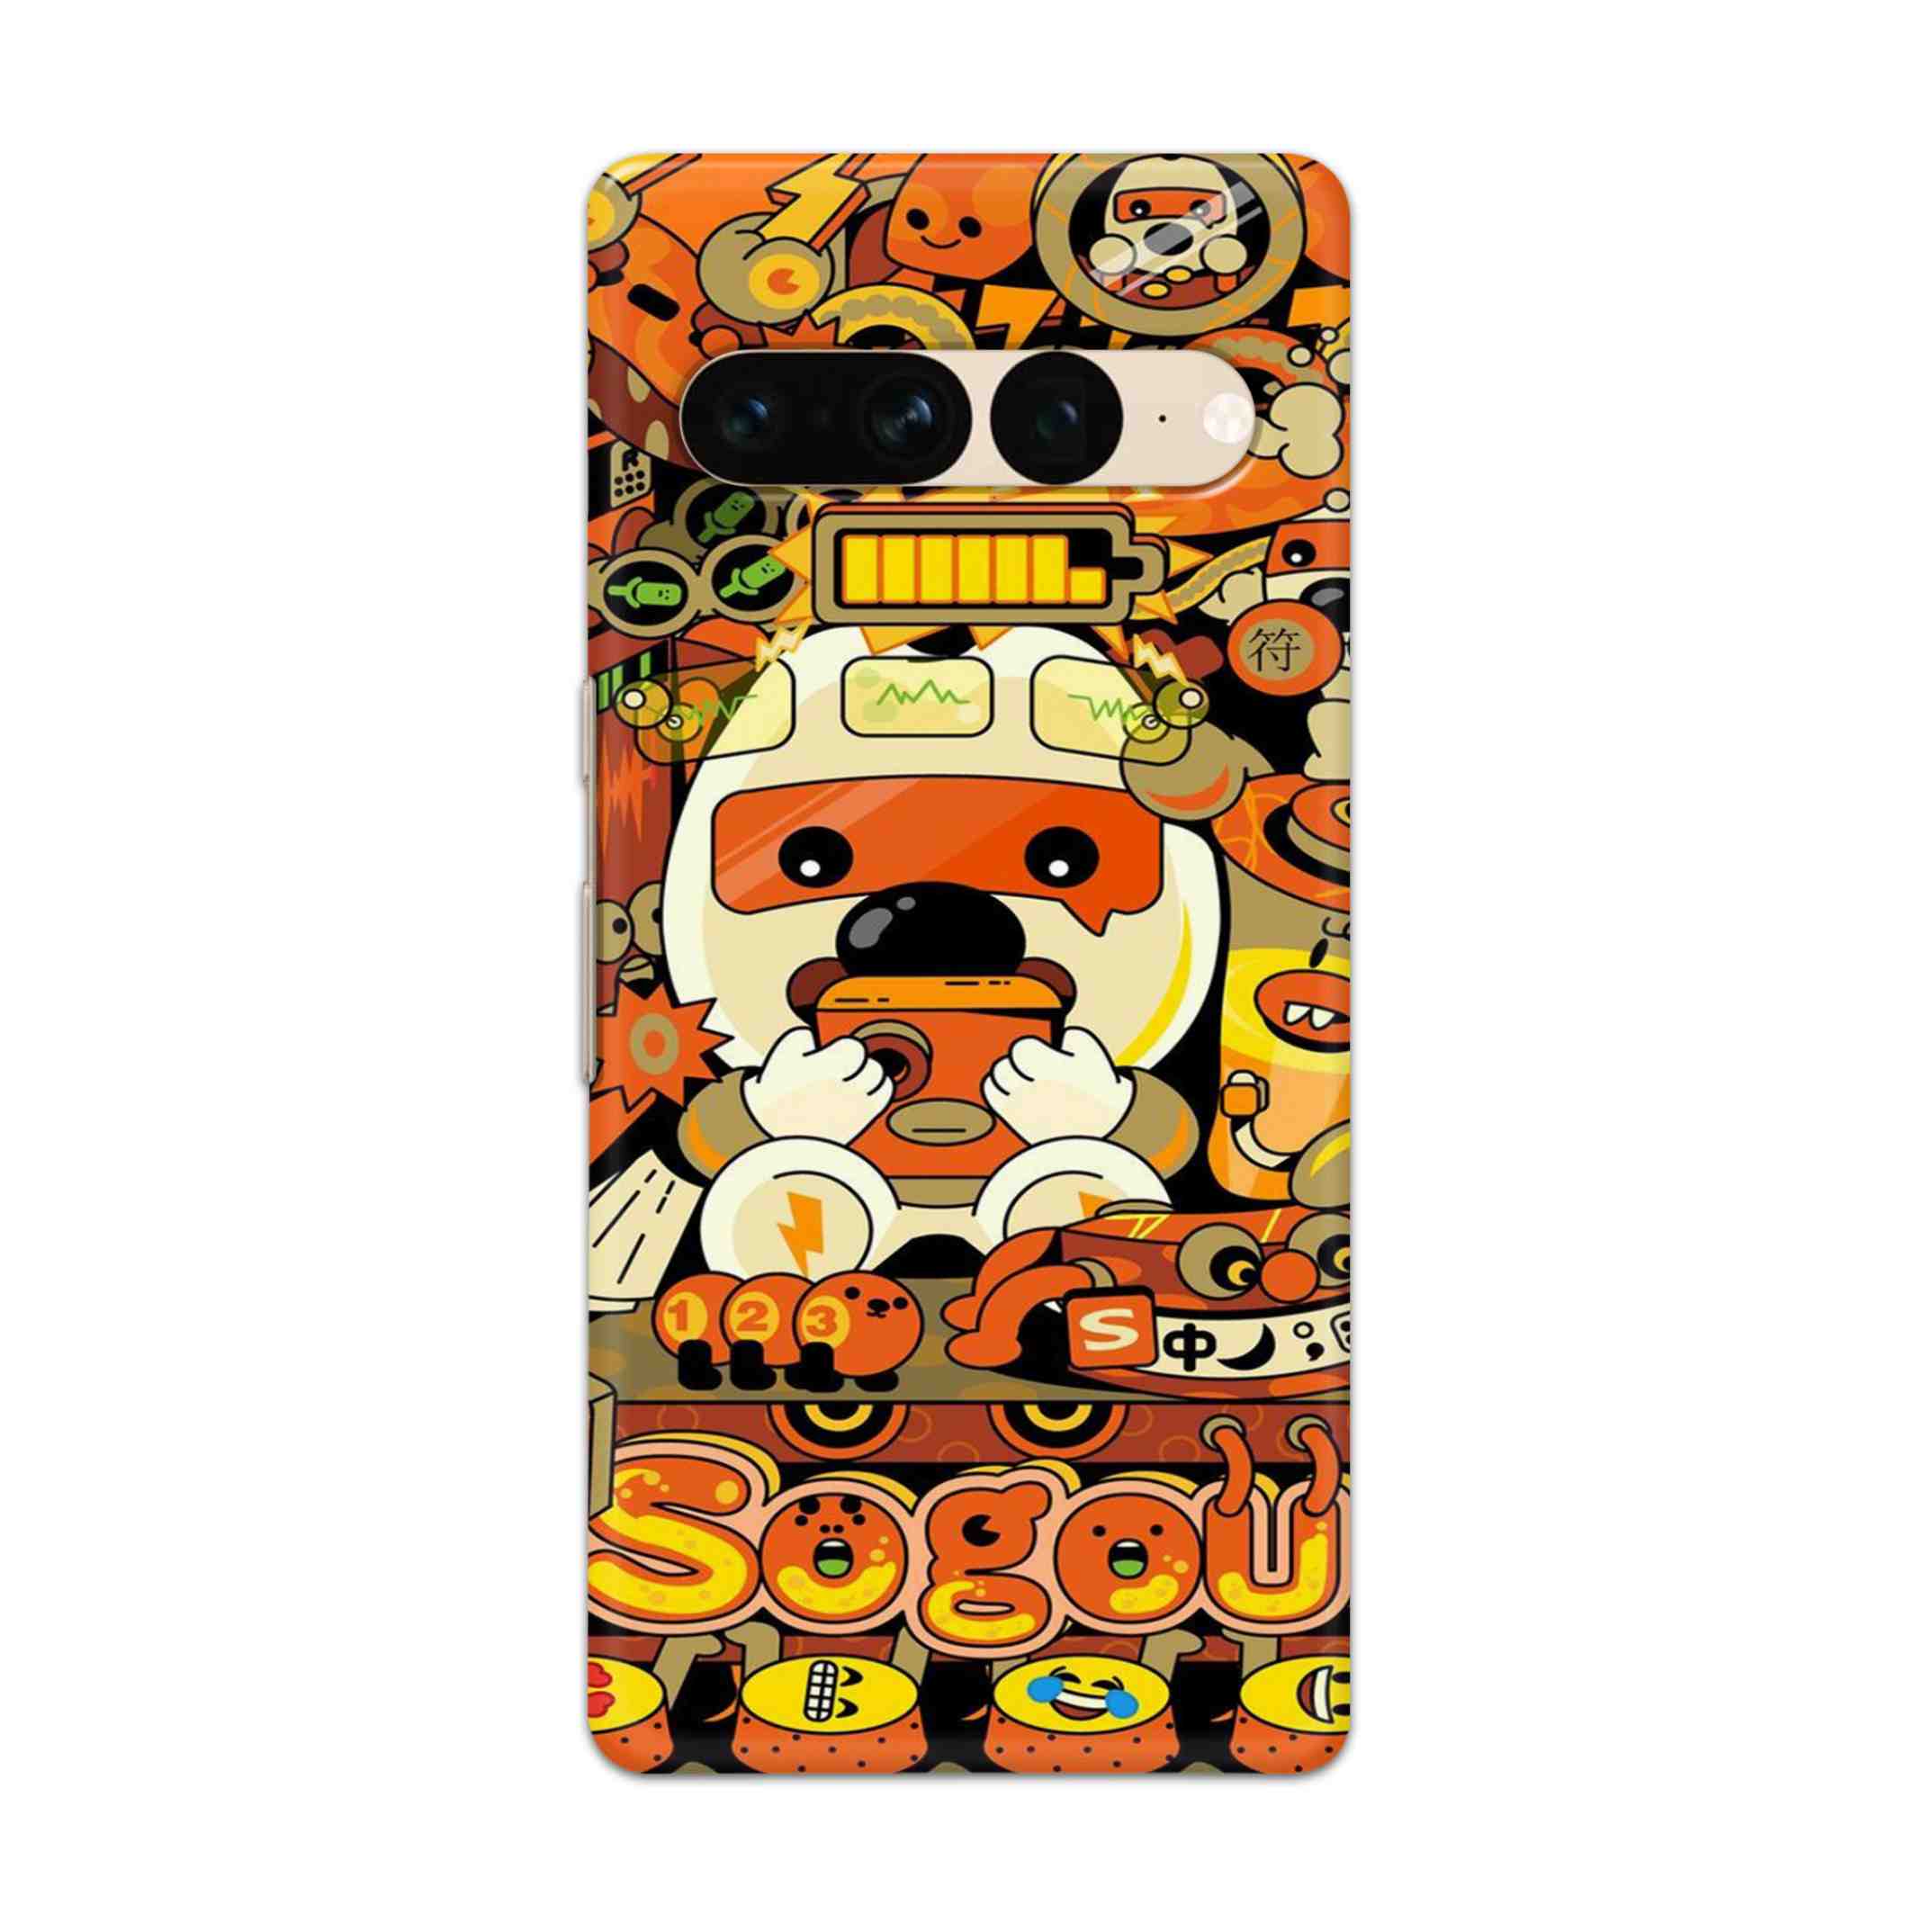 Buy Sogou Hard Back Mobile Phone Case Cover For Google Pixel 7 Pro Online